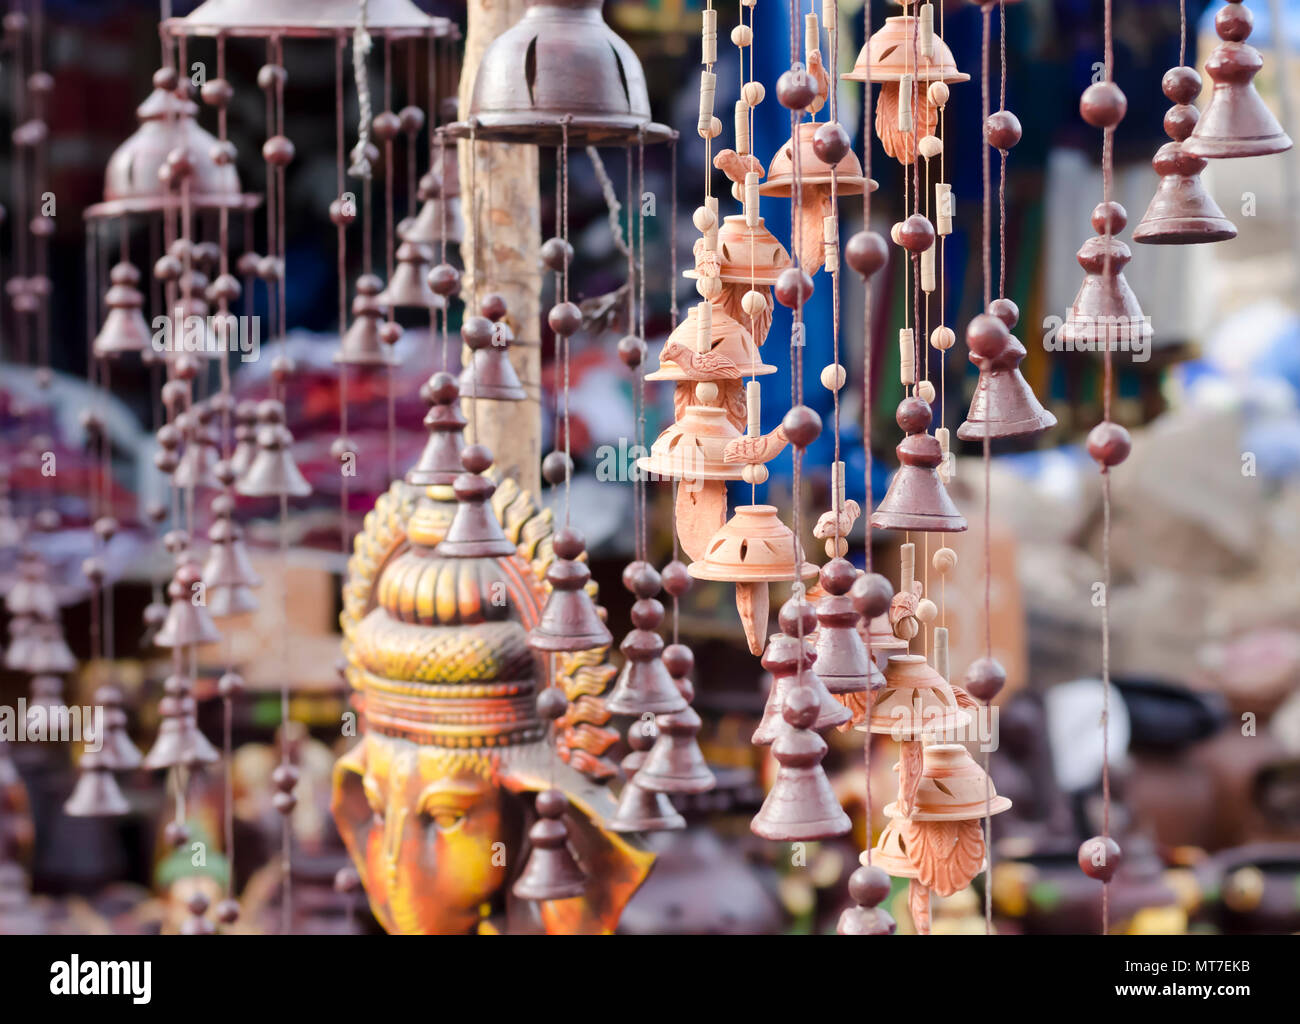 Beau jardin ornements-cloches, perles, oiseaux, Ganesha-fait d'argile/céramique en vente au village des arts et métiers Shilparamam à Hyderabad, Inde. Banque D'Images